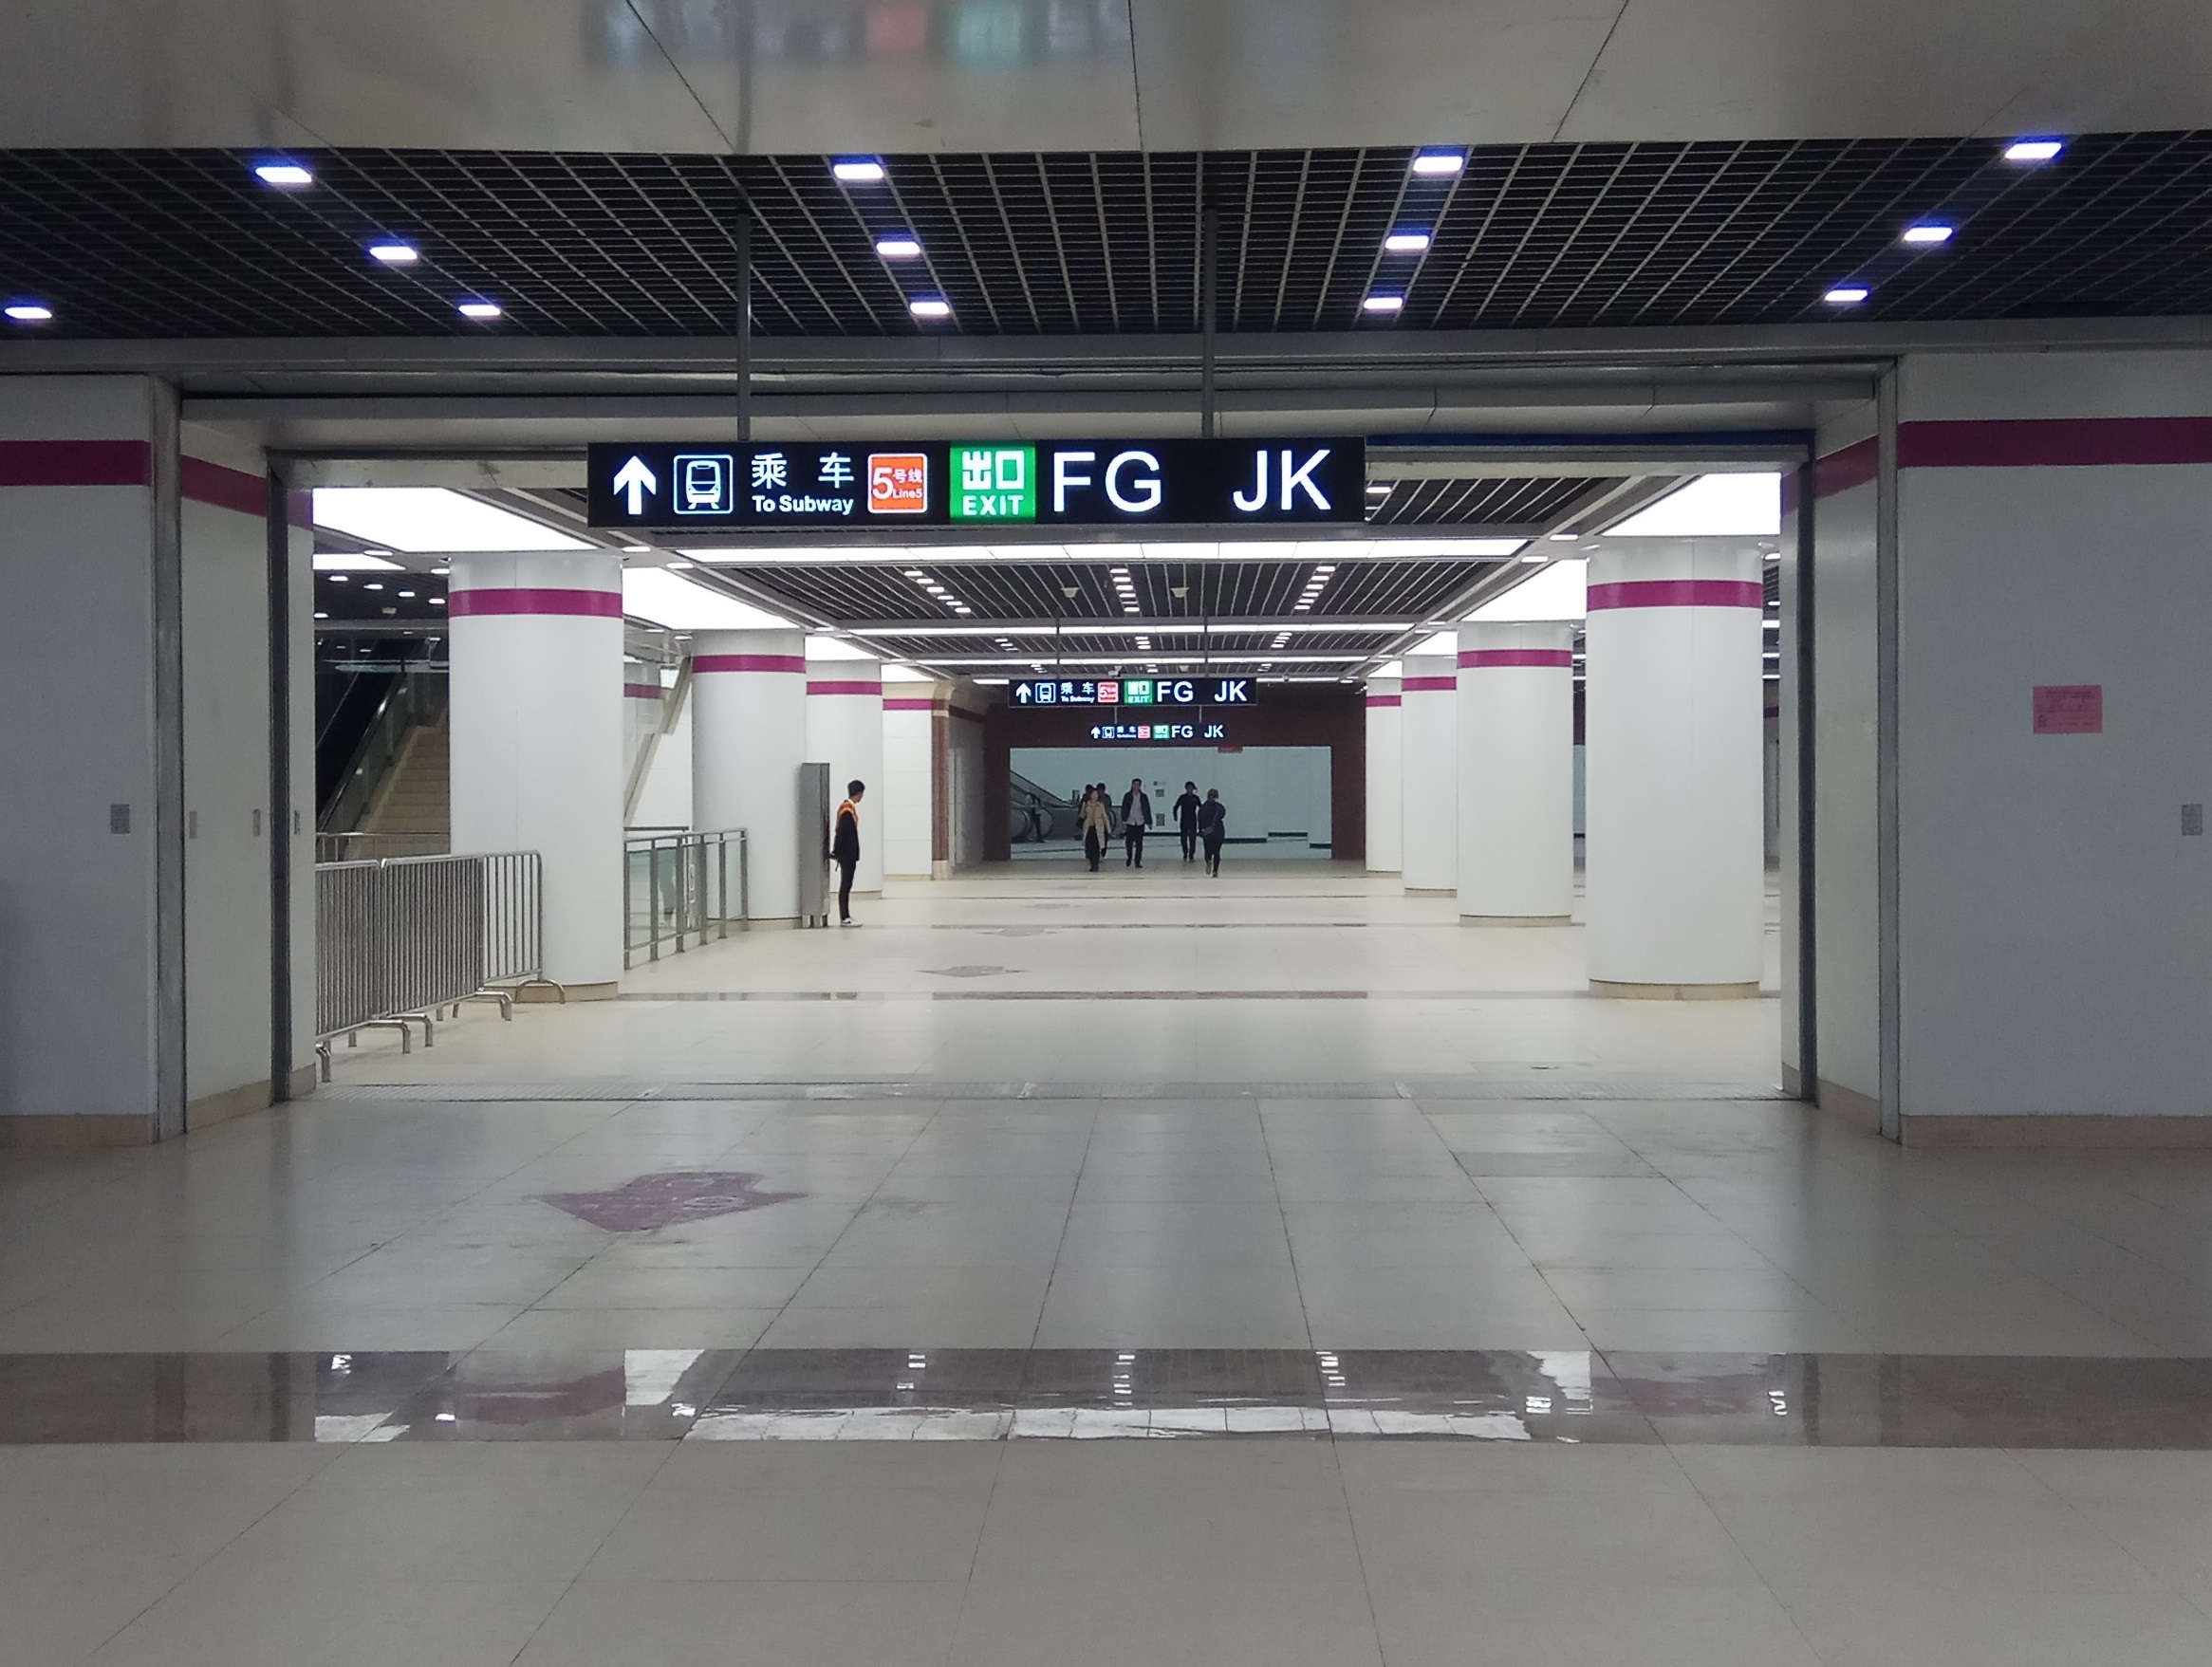 天津地铁文化中心站的大厅天津地铁z2线走向目前尚未完全确定,但是它